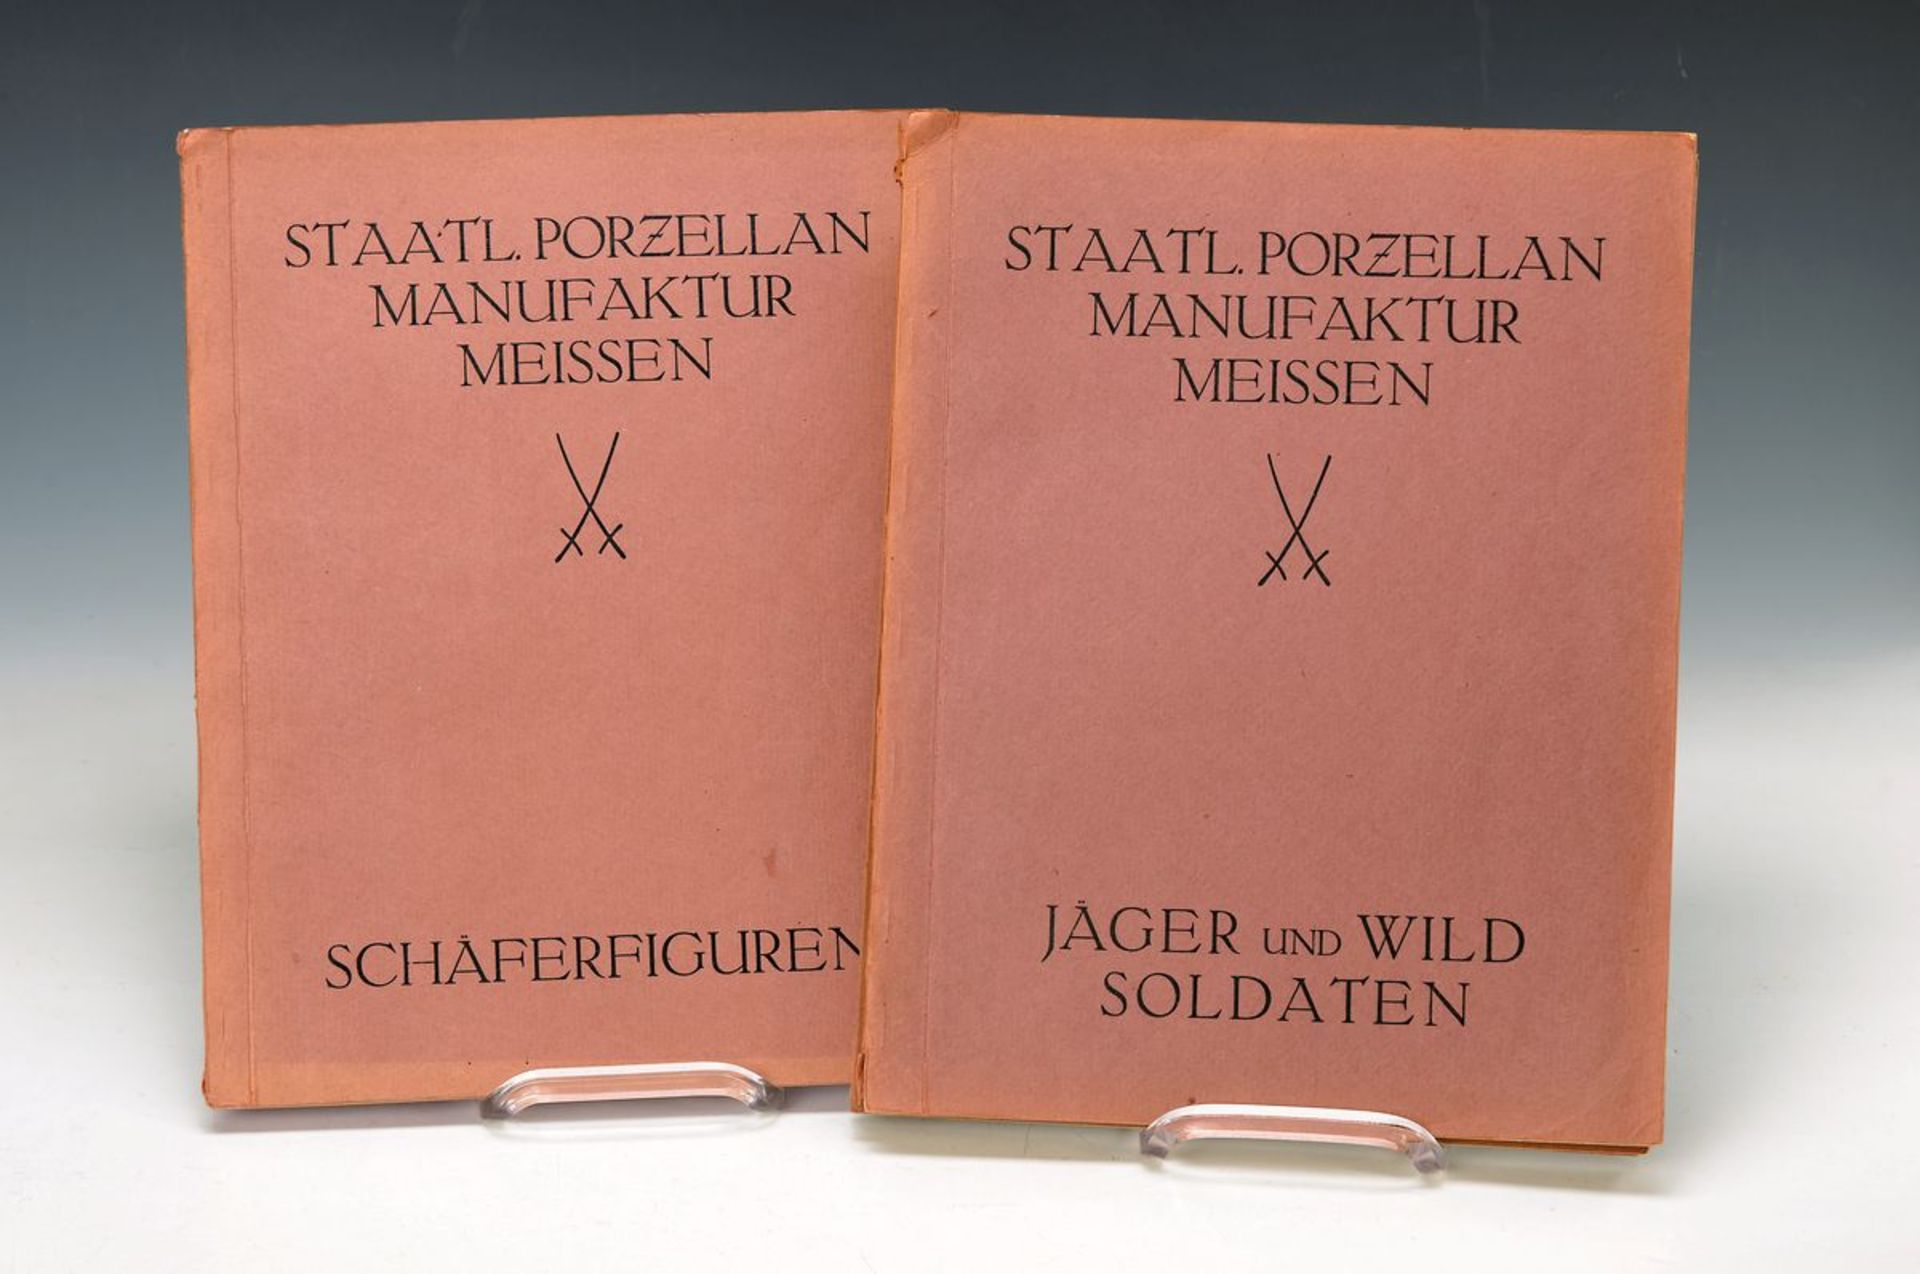 Preislisten der Staatlichen Porzellan Manufaktur Meissen, 1931 bzw. 33, zu Schäferfiguren, Jägern,